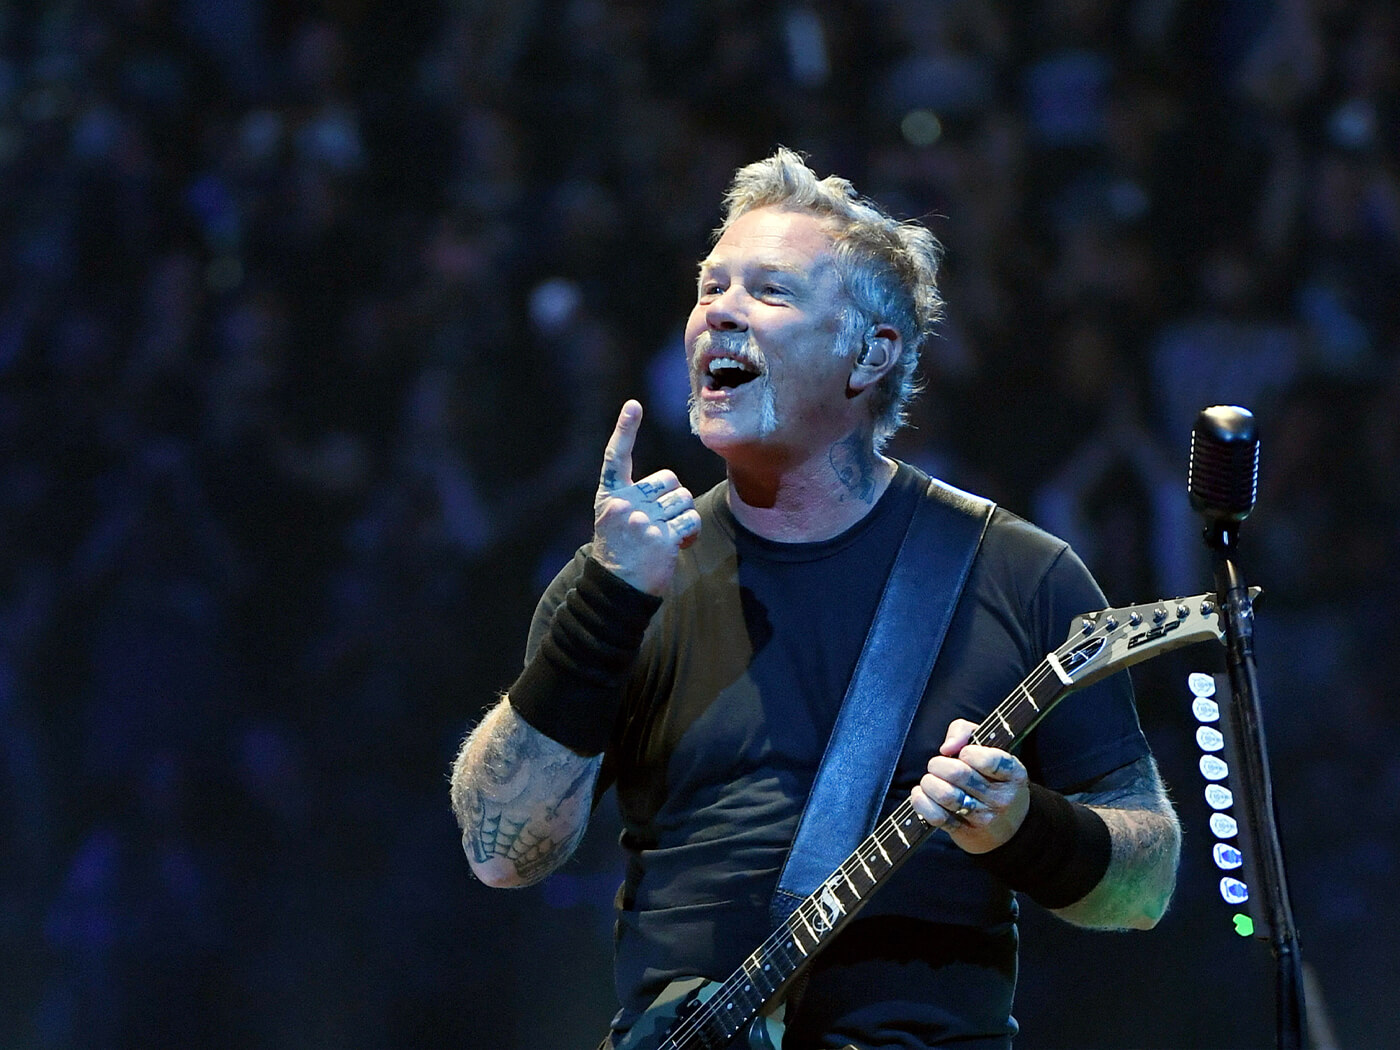 James Hetfield of Metallica ontage